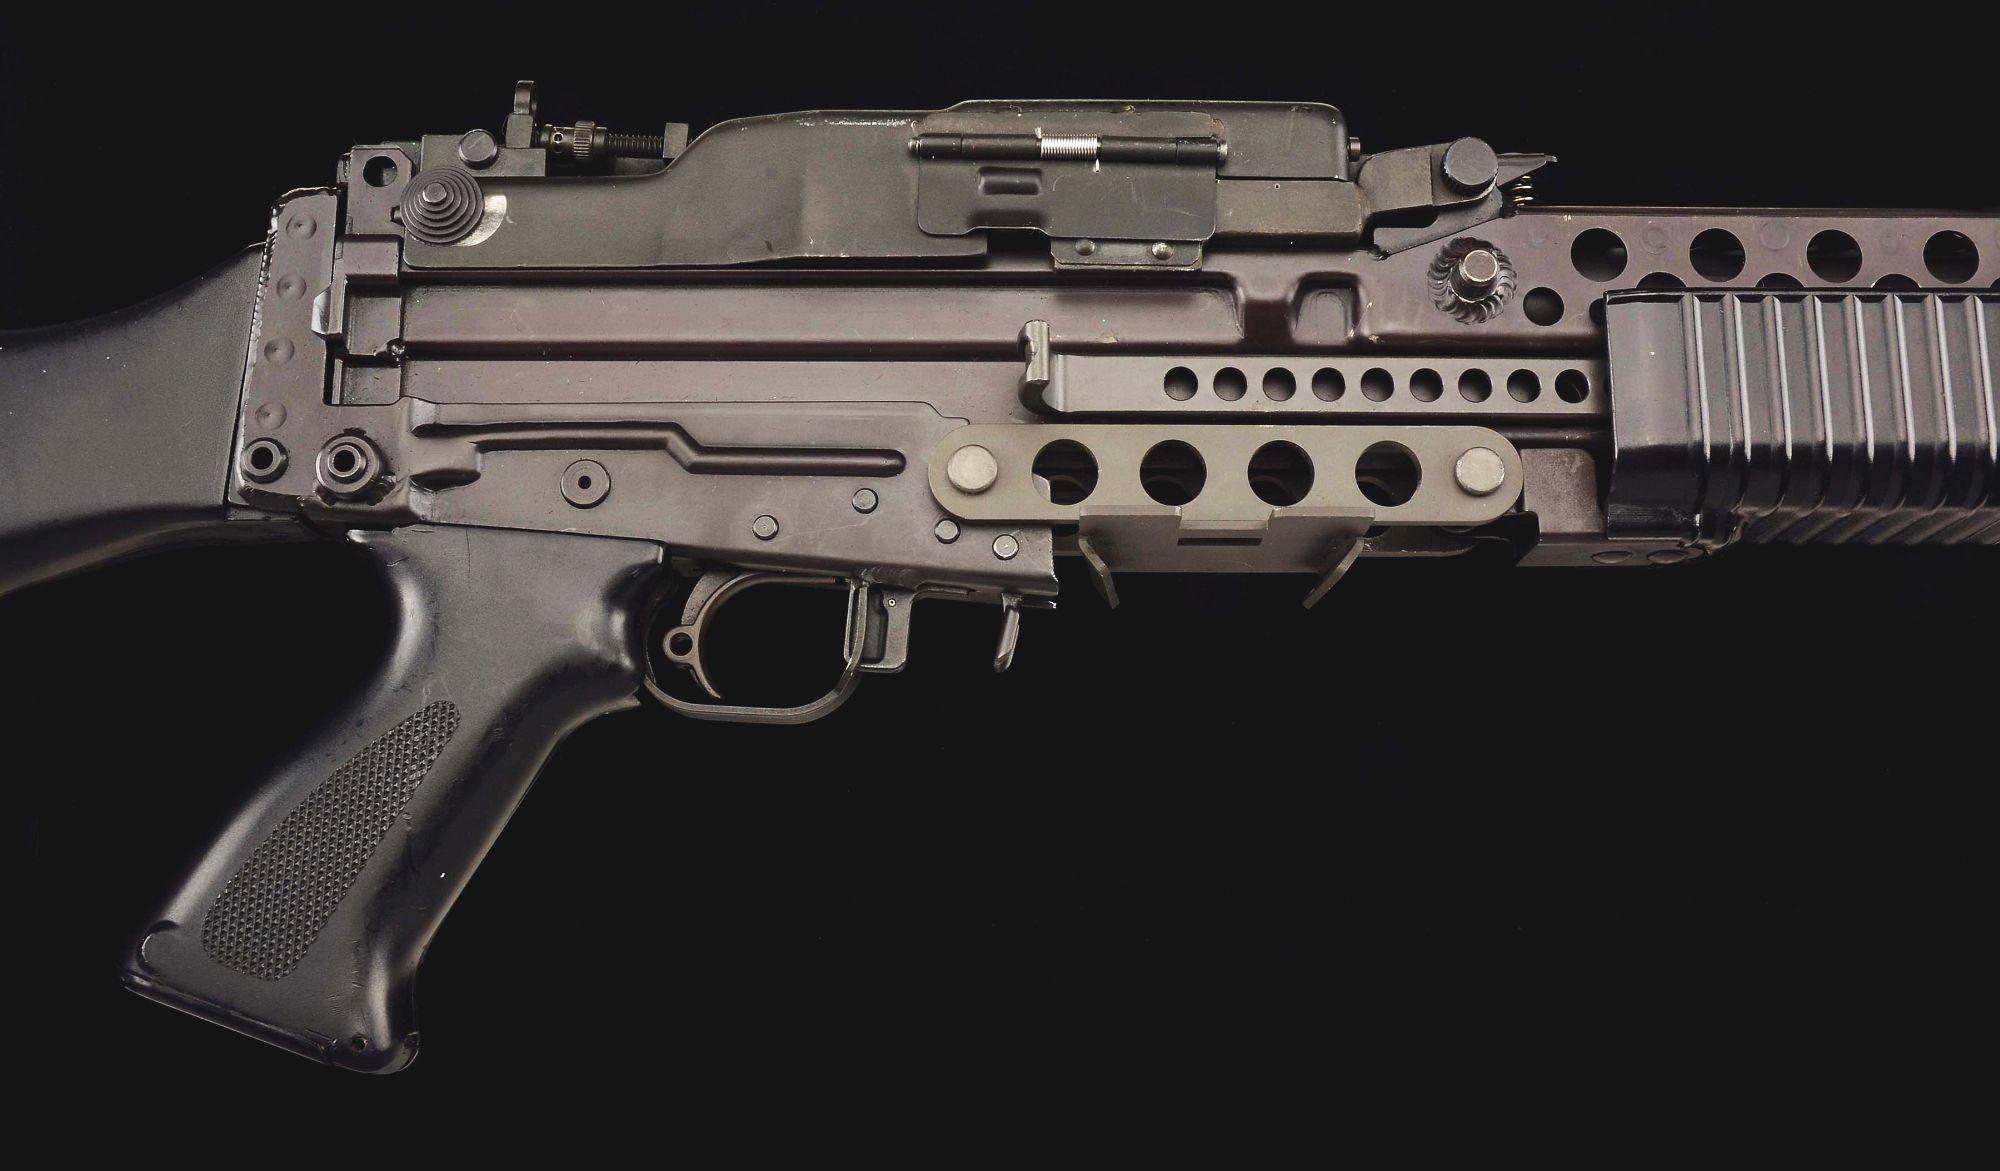 (N) FABULOUS ORIGINAL CADILLAC GAGE STONER 63 MACHINE GUN (PRE-86 DEALER SAMPLE).